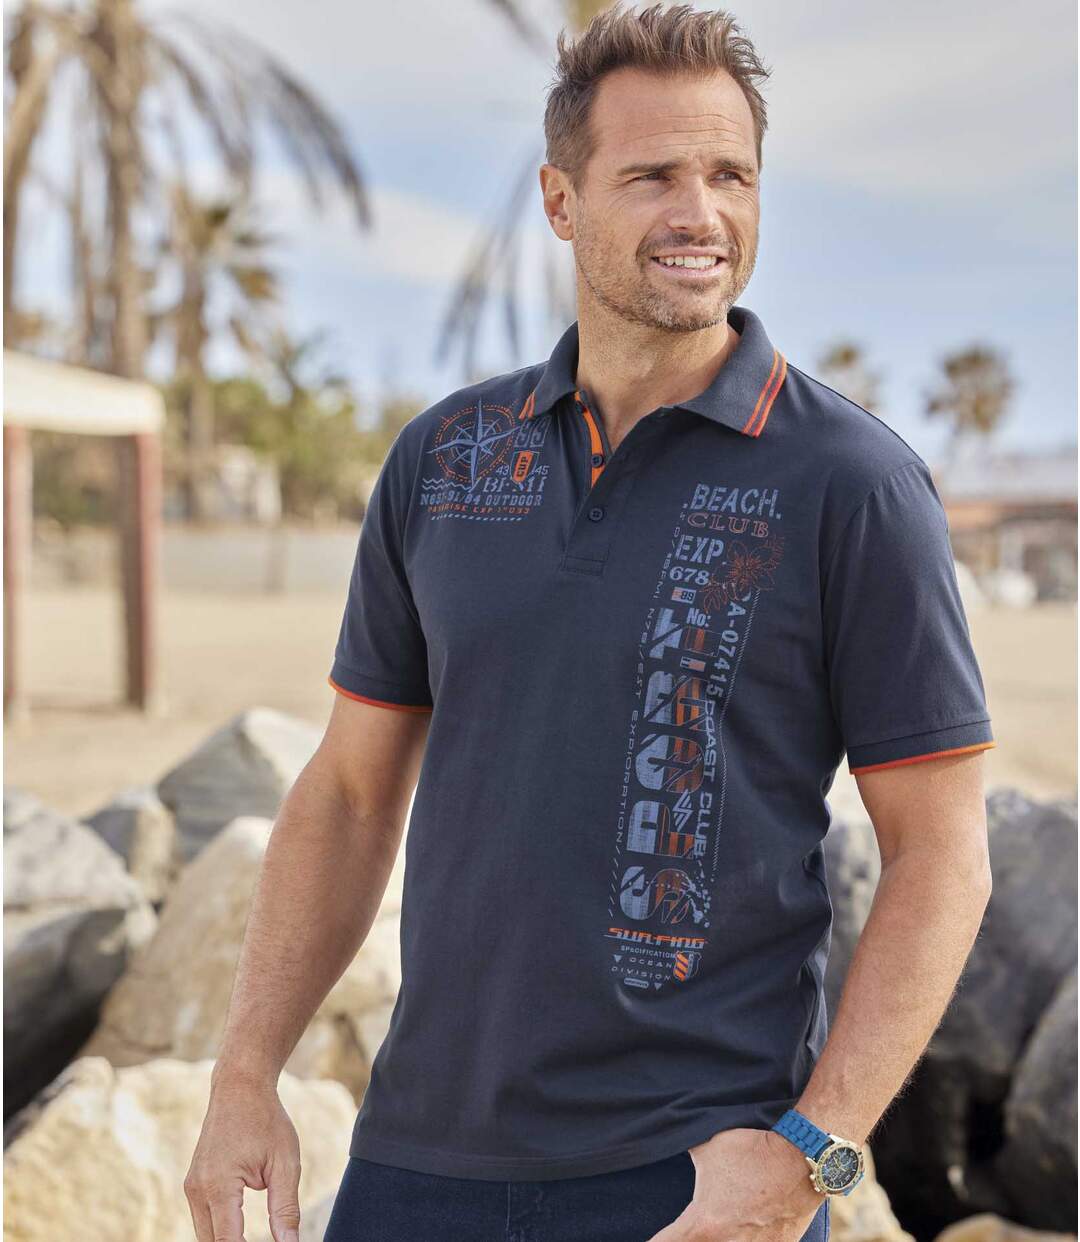 Polo tričko Beach Club z žerzejového úpletu Atlas For Men